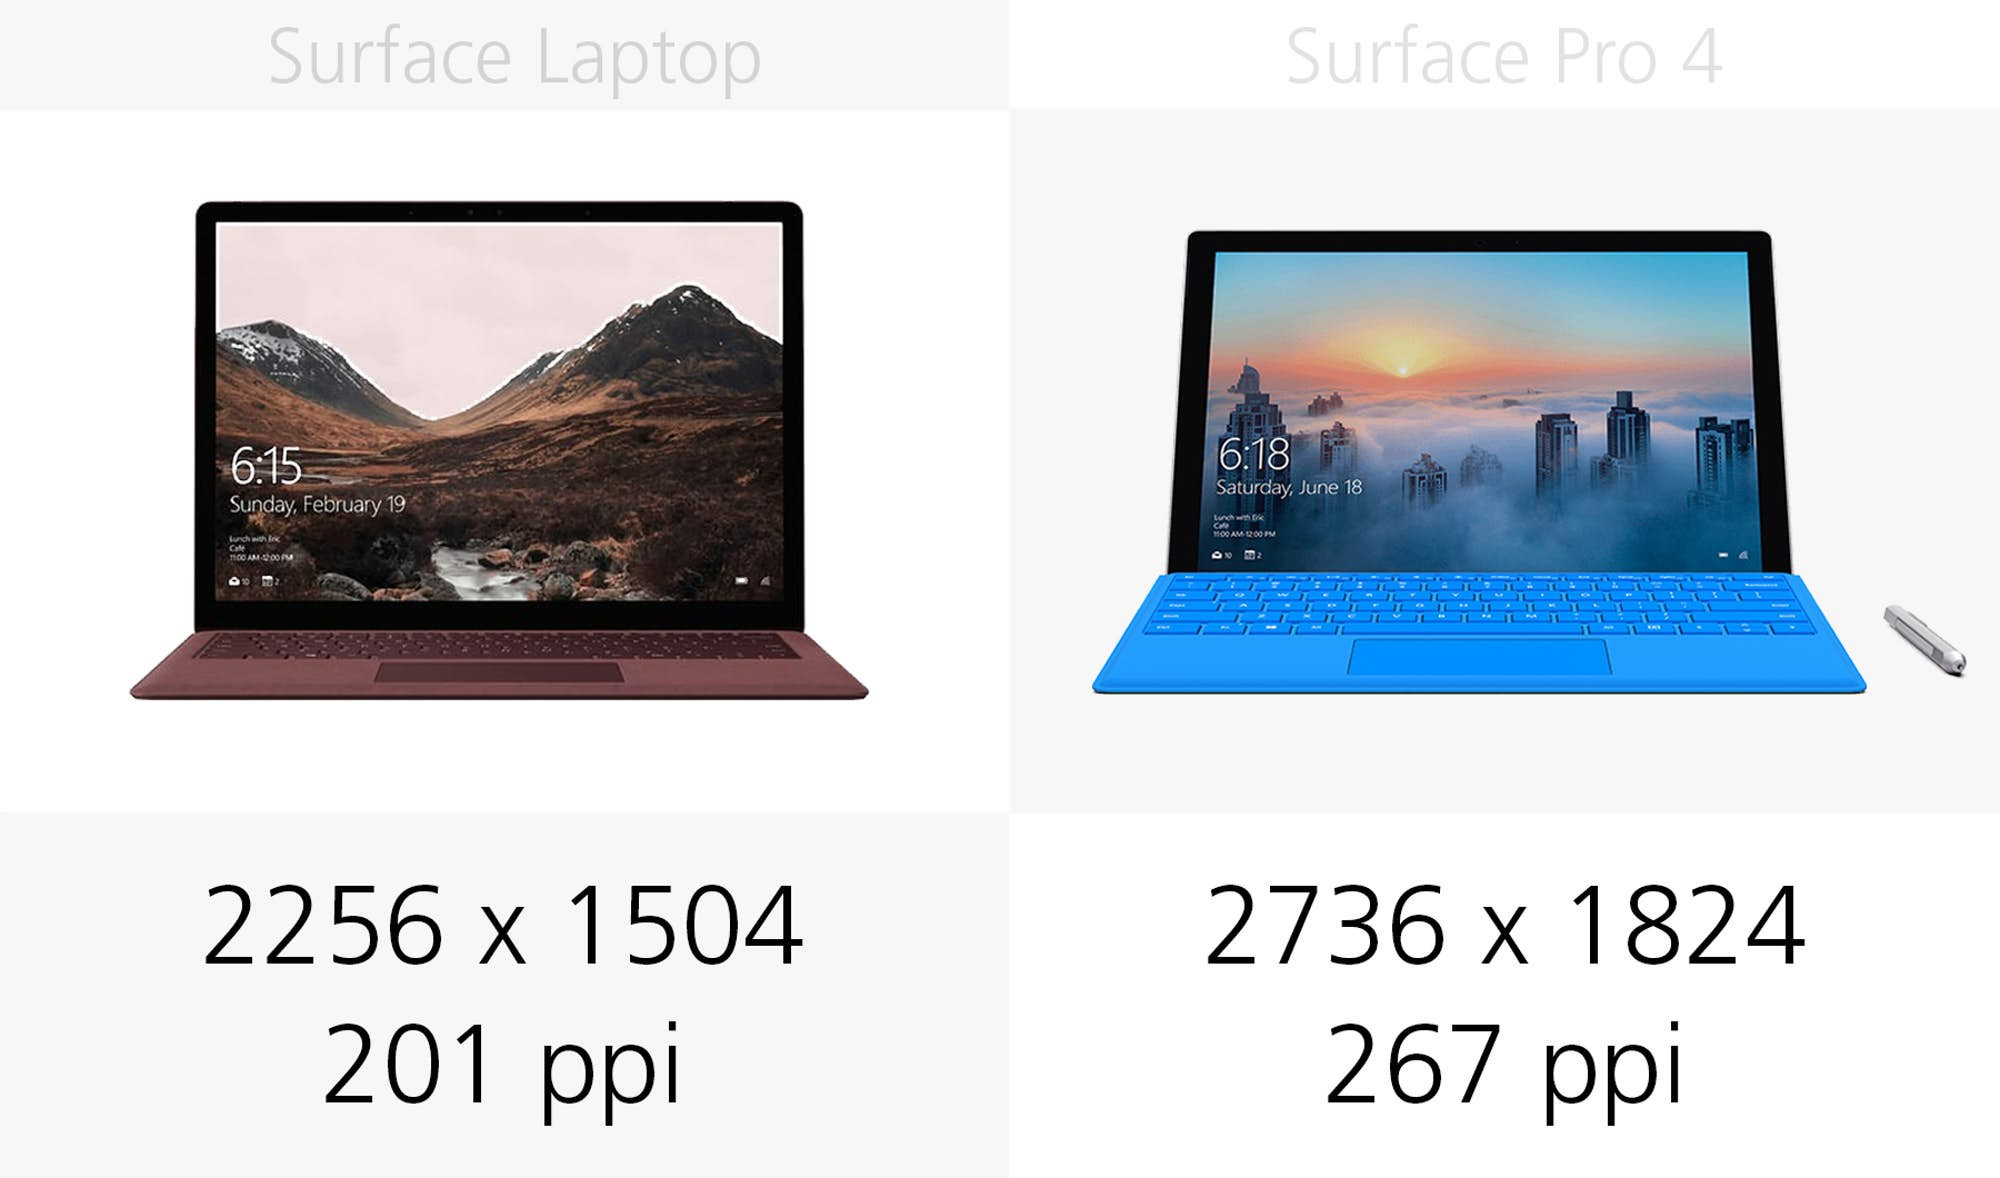 1493969739_microsoft-surface-laptop-vs-surface-pro-4-specs-comparison-18.jpg